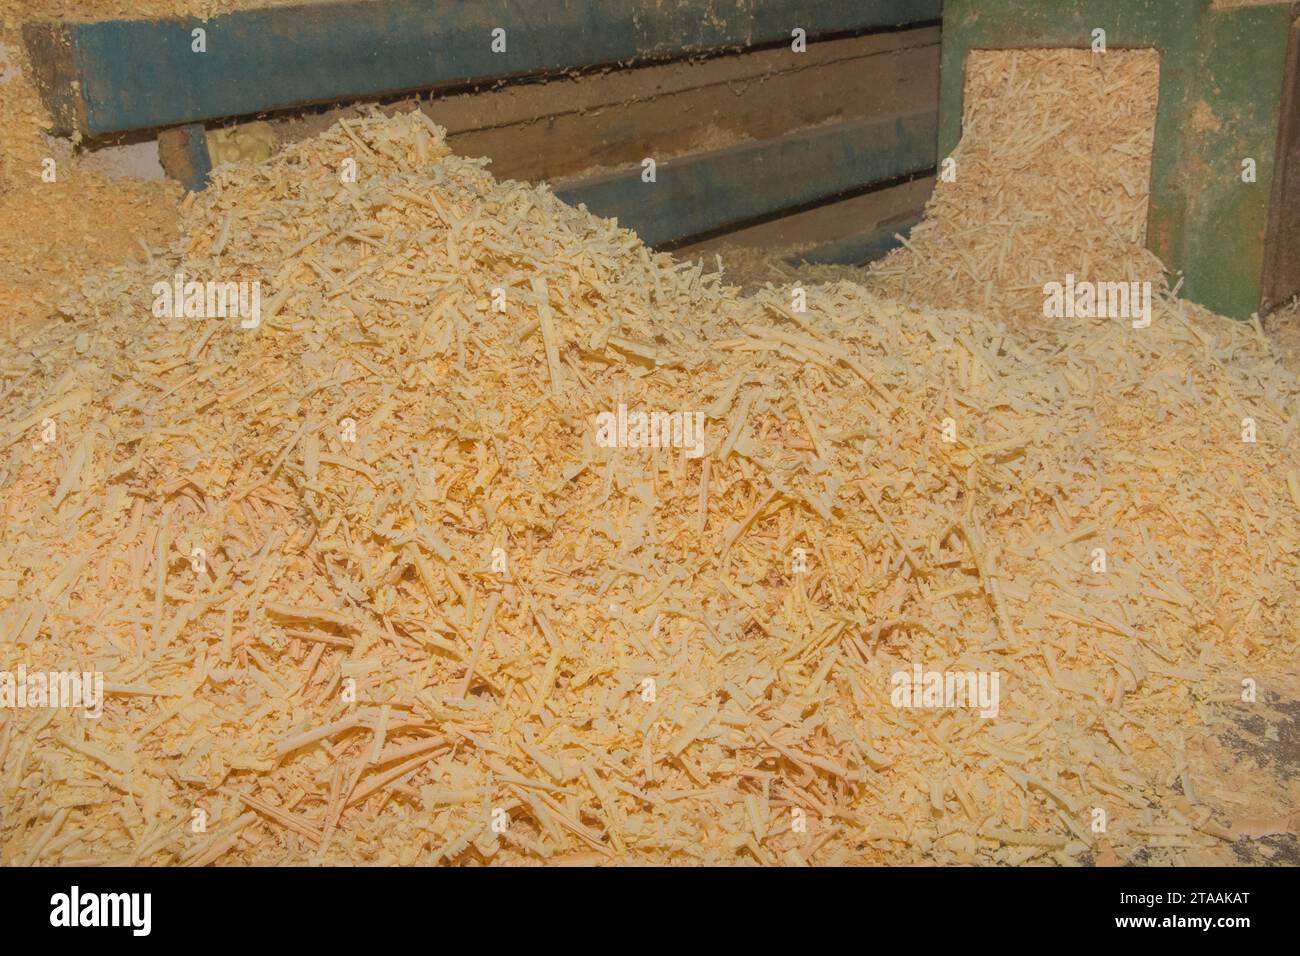 Riciclaggio dei rifiuti di Sawdust in legno riciclaggio dell'industria delle macchine utensili per impianti industriali in legno. Foto Stock